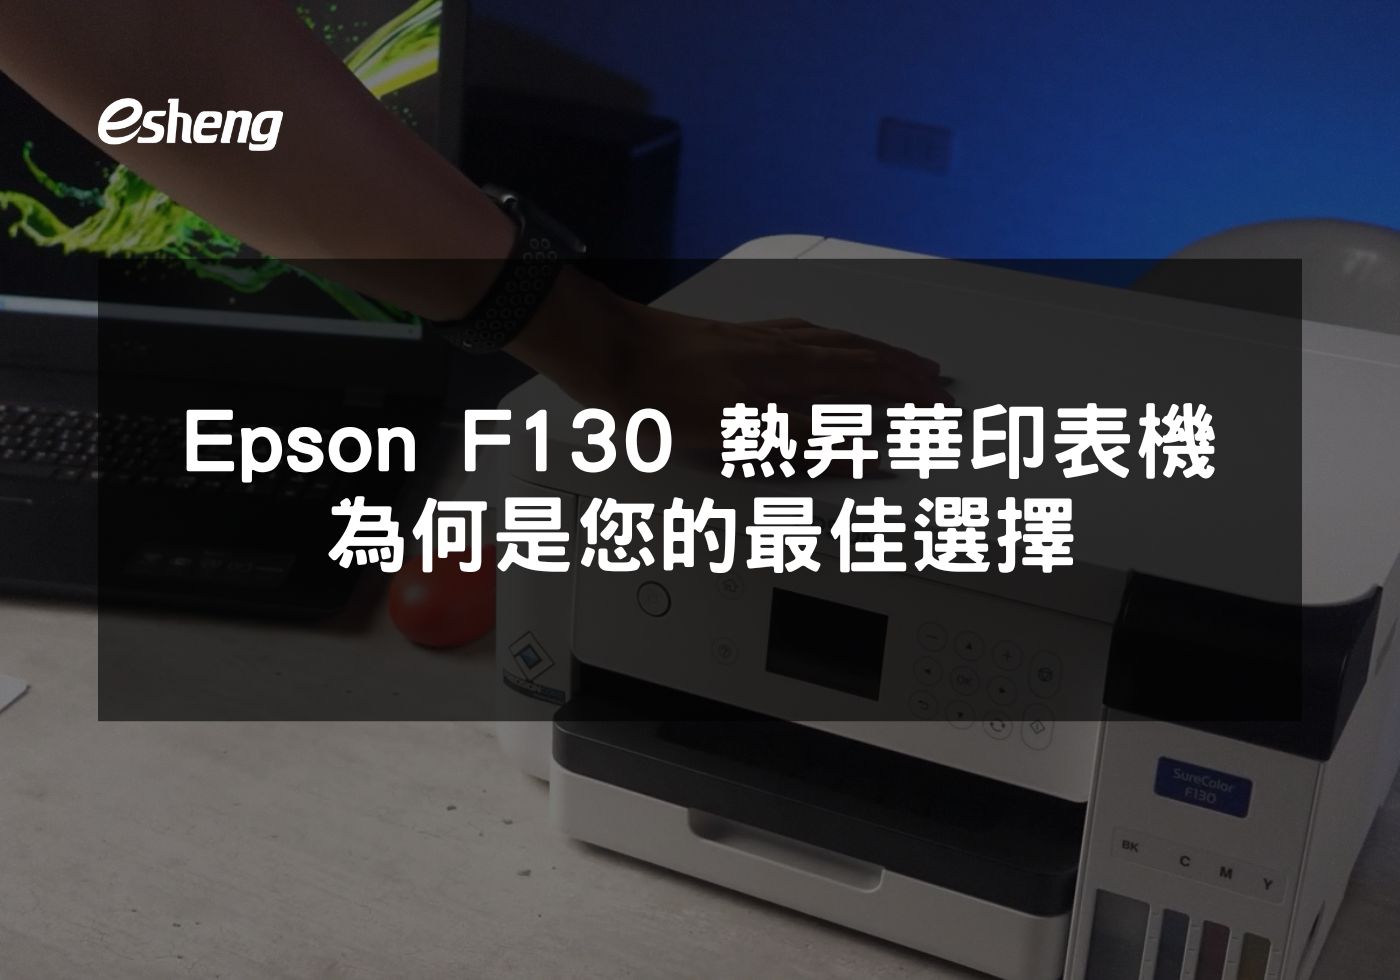 深入解析 Epson F130 熱昇華印表機的專業特性與多功能應用